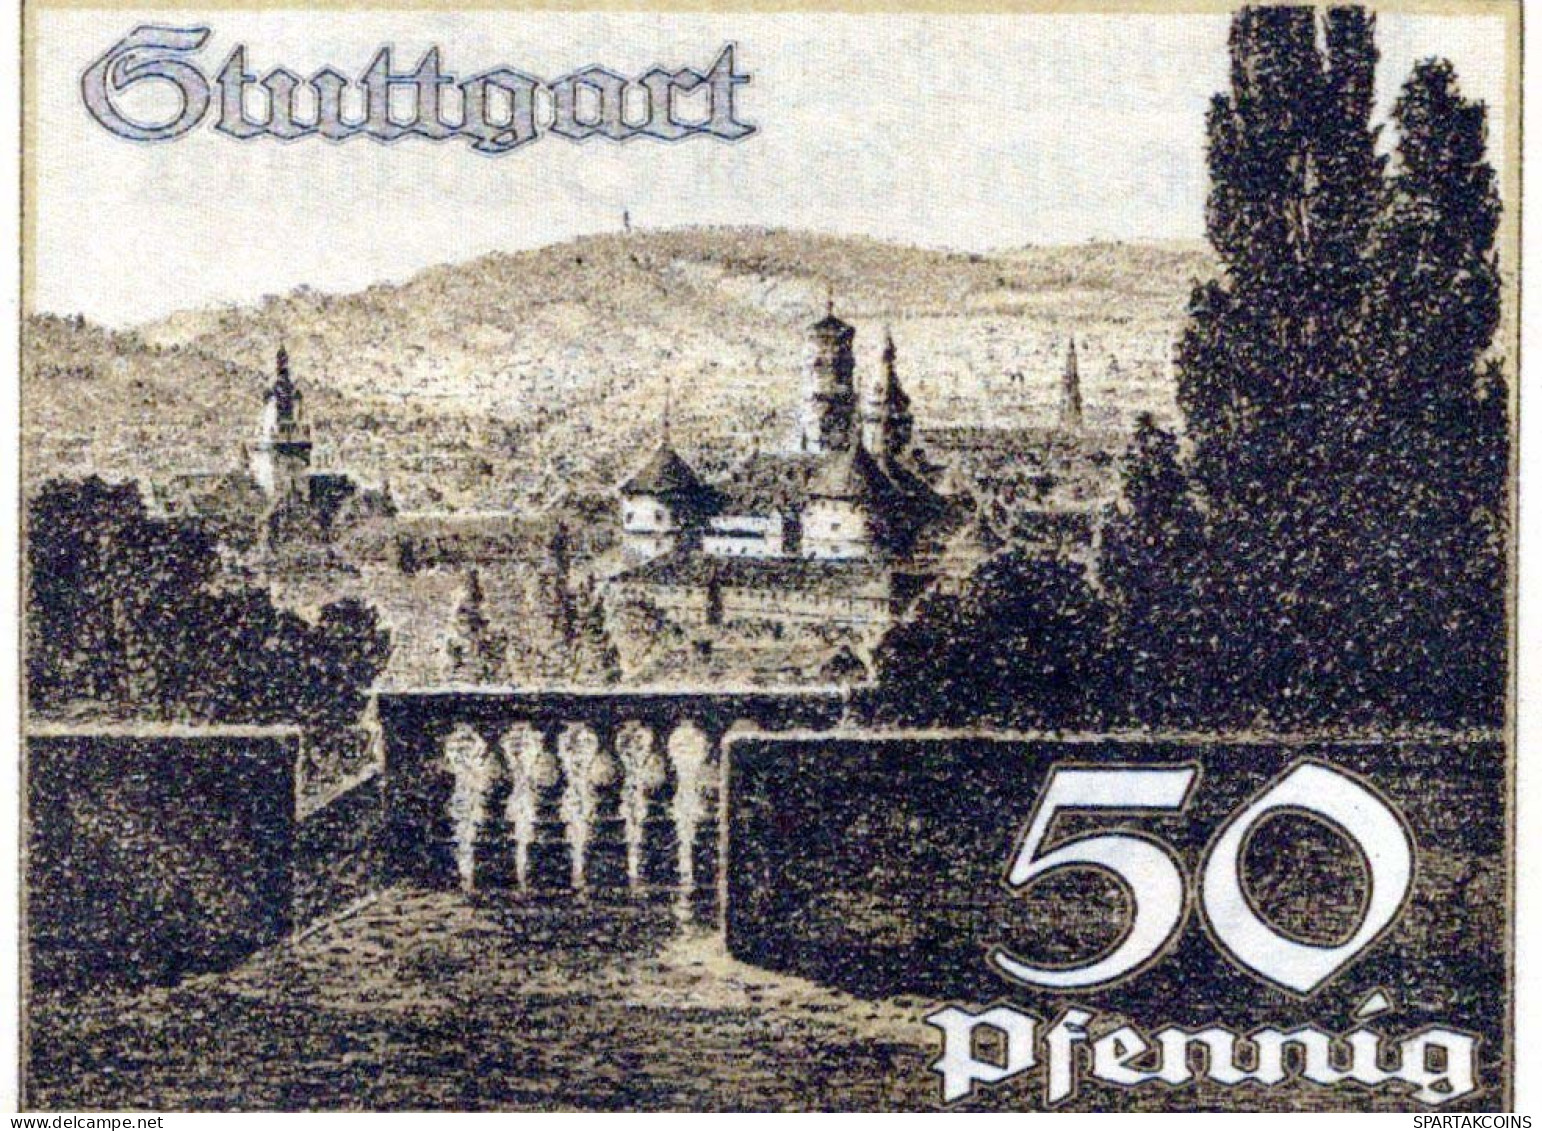 50 PFENNIG 1921 Stadt STUTTGART Württemberg UNC DEUTSCHLAND Notgeld #PC437 - [11] Lokale Uitgaven